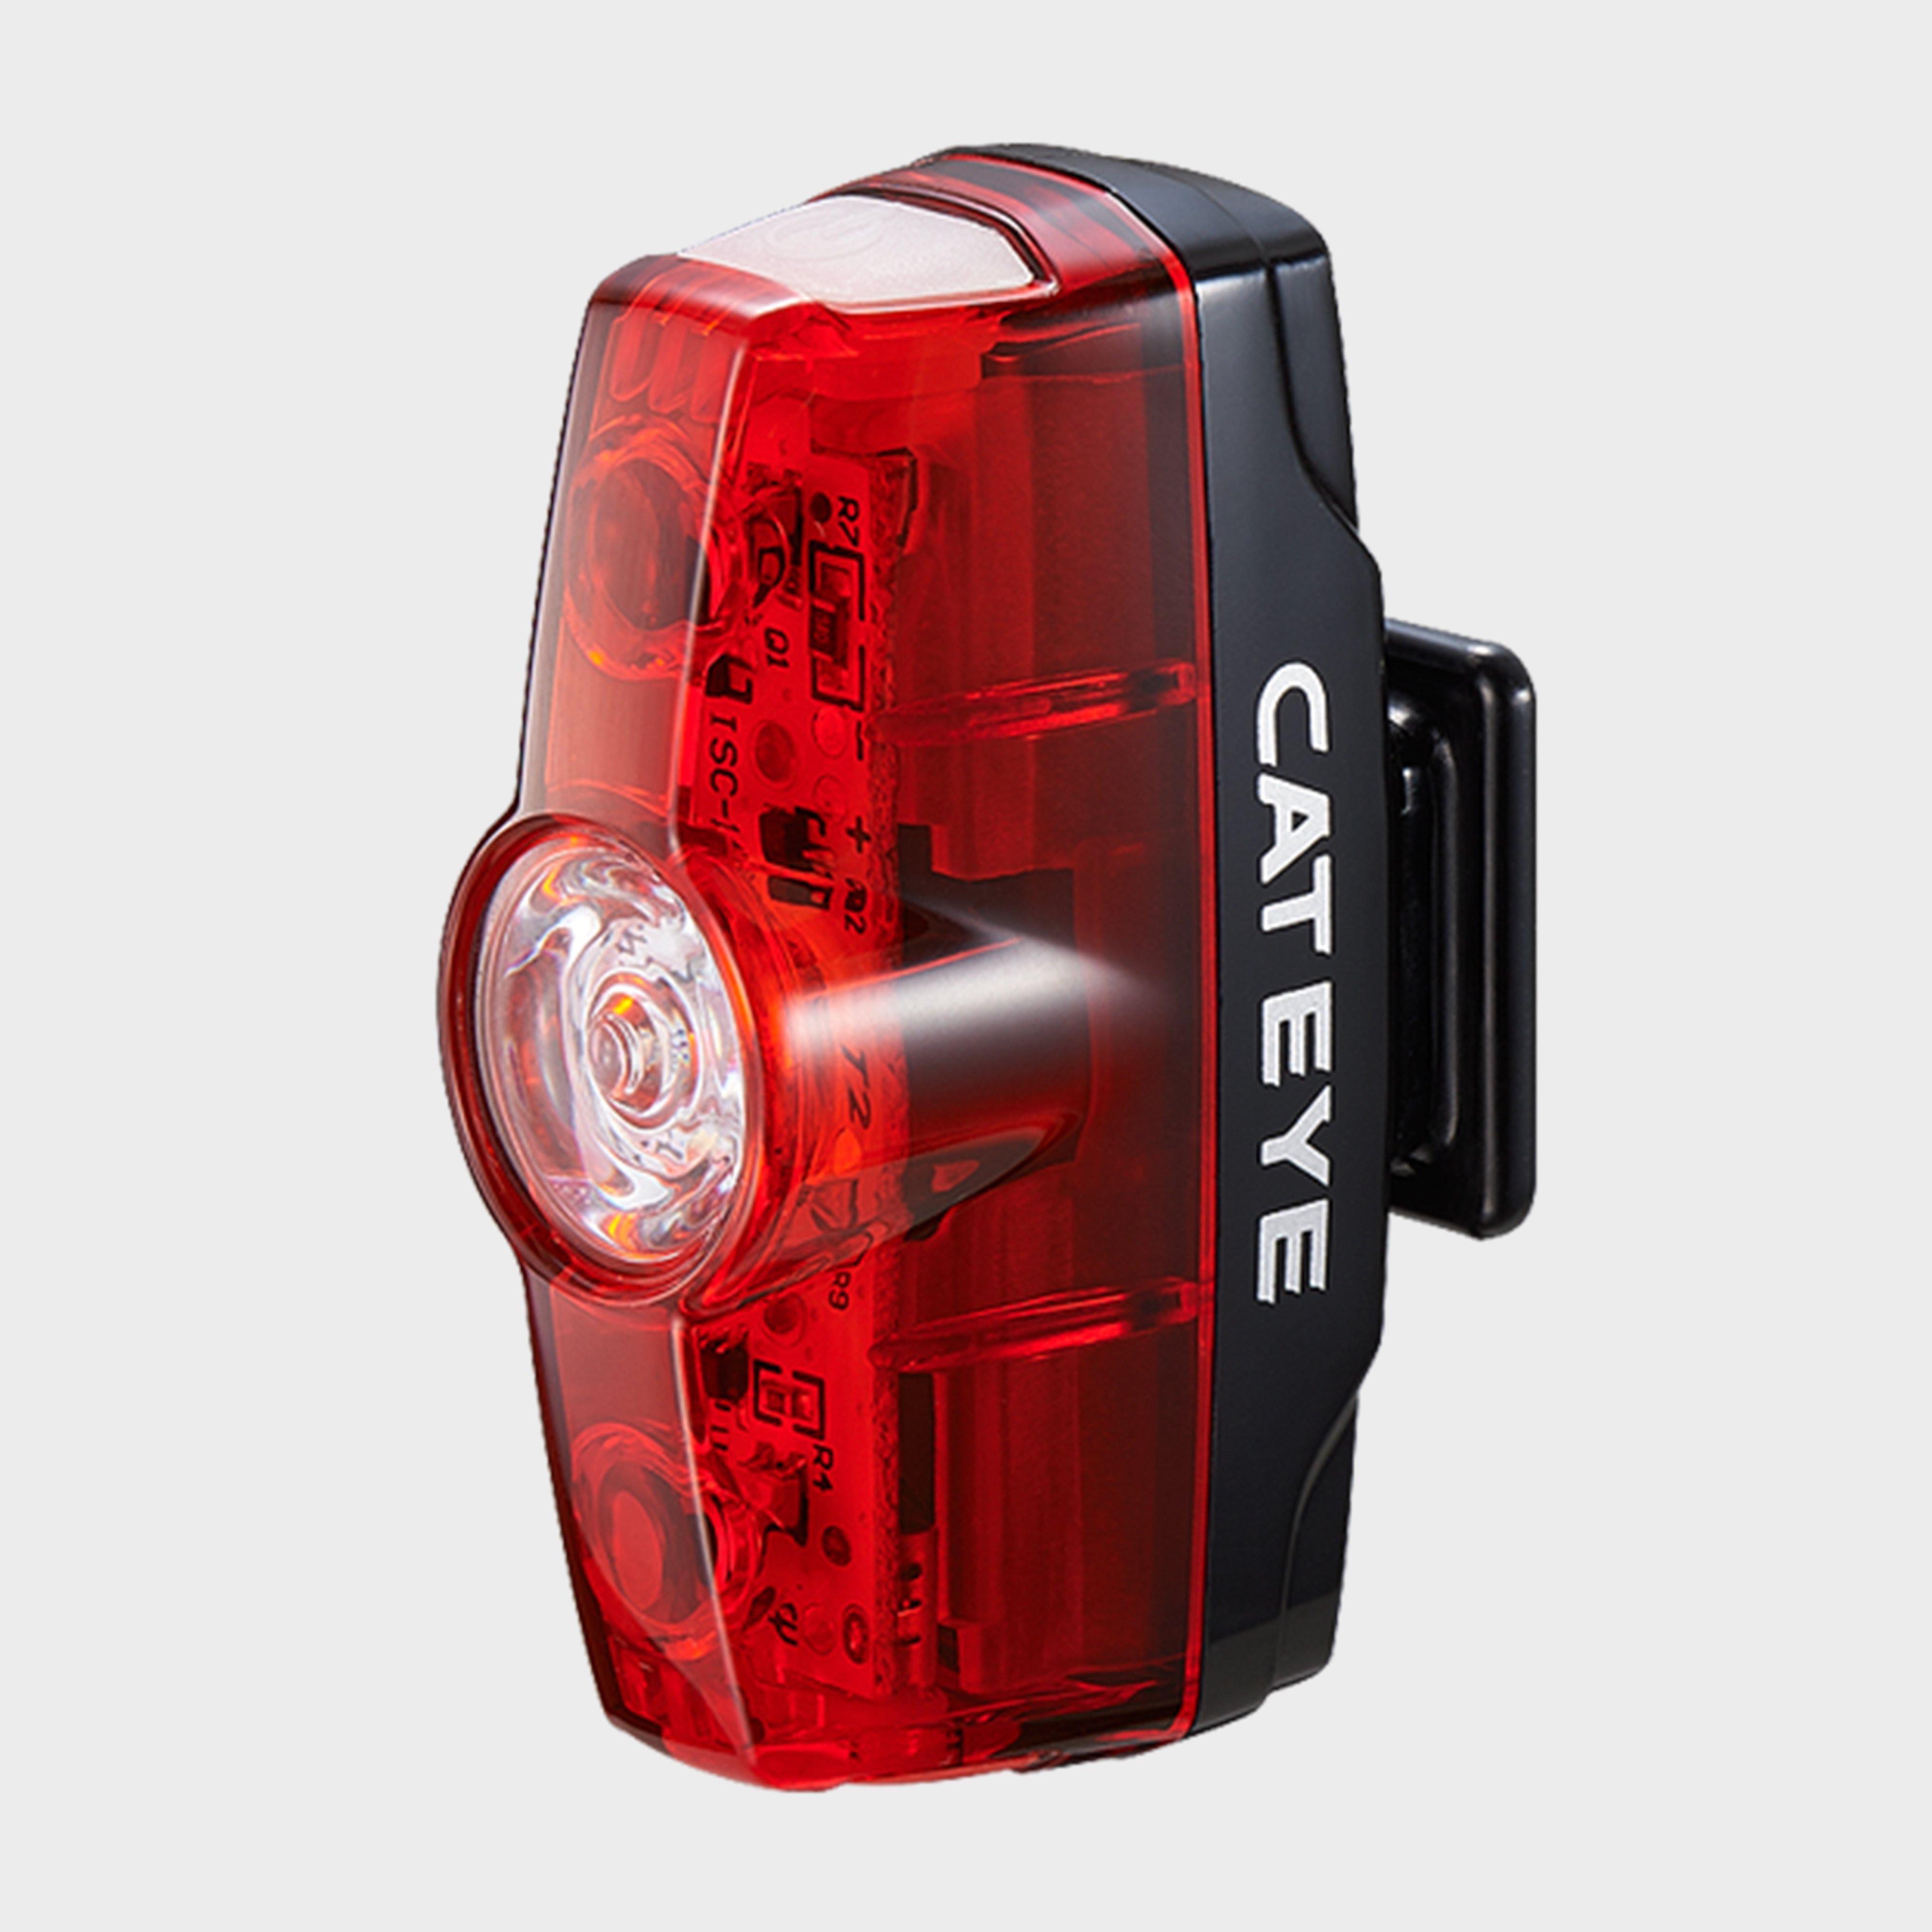 Cateye Rapid Micro Rear Light - Red/rear  Red/rear